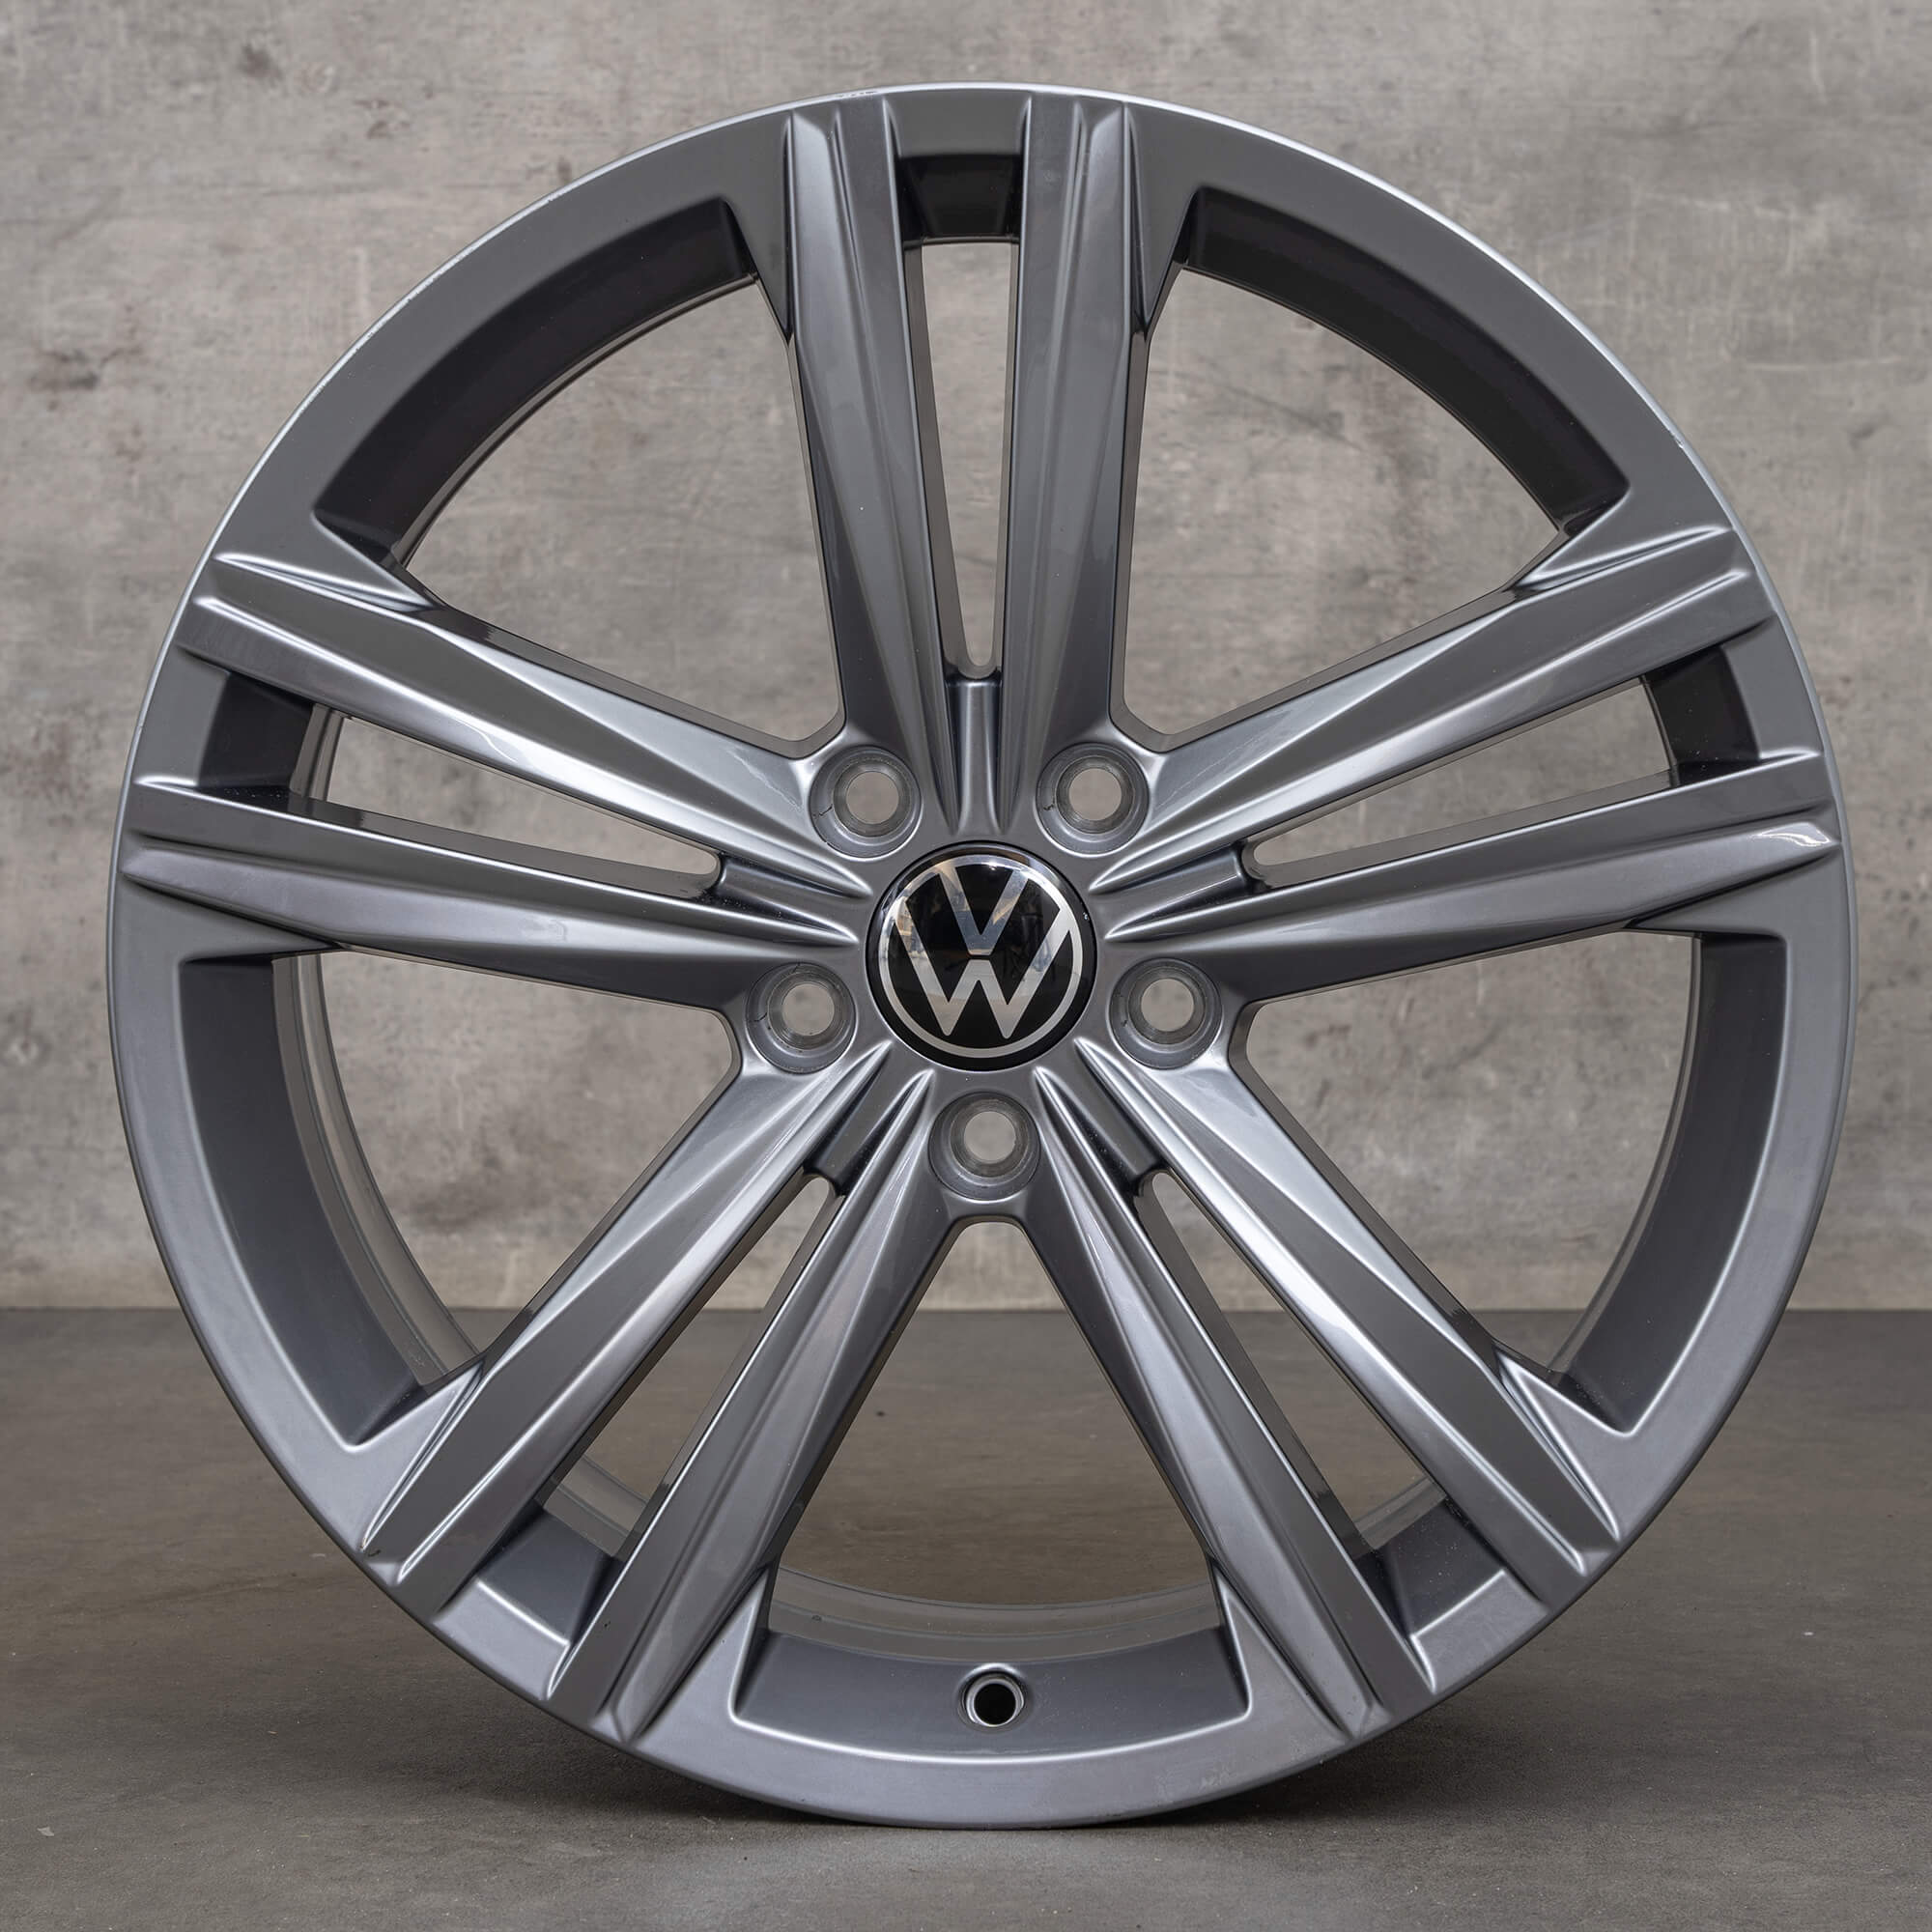 VW Arteon Passat Alltrack 3G Llantas de 18 pulgadas Sebring gris tremolita